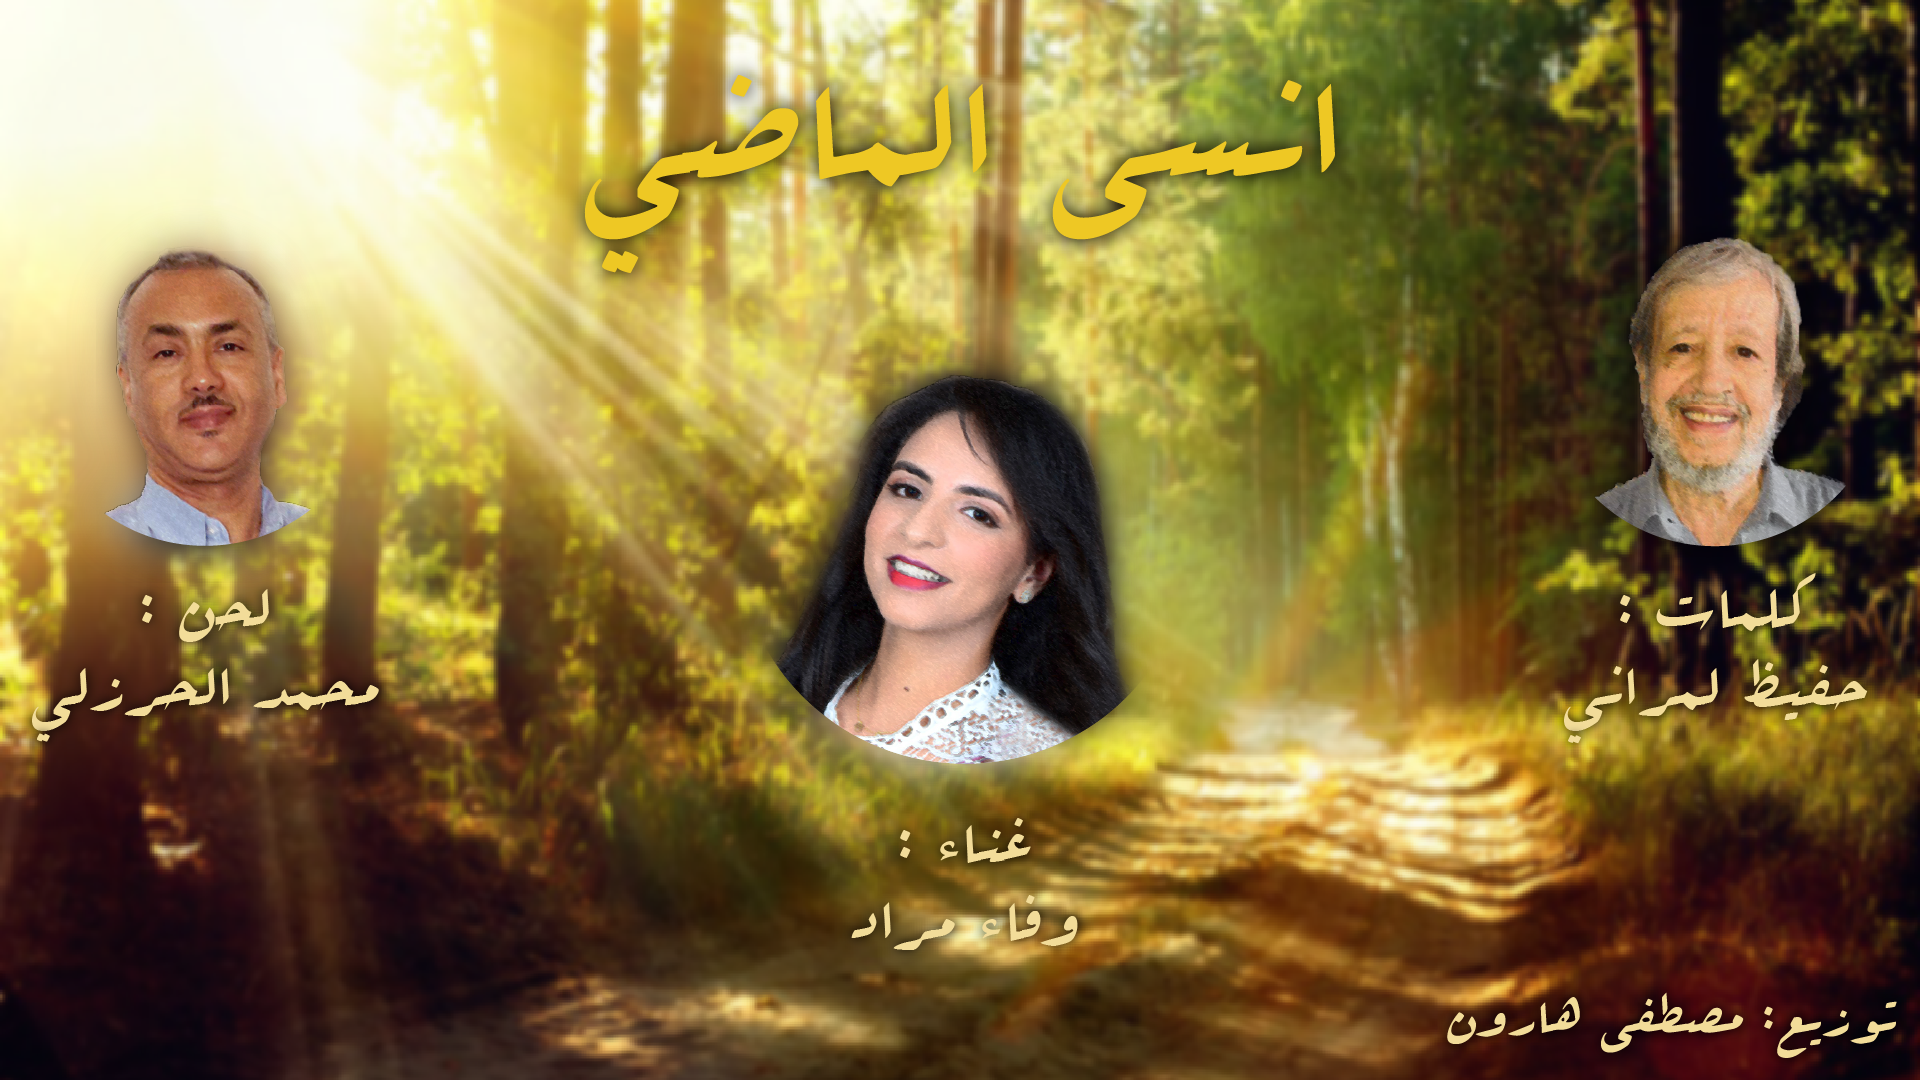 أغنية “انسى الماضي : ابداع جديد للثلاثي حفيظ الأمراني ومحمد الحرزلي ووفاء مراد